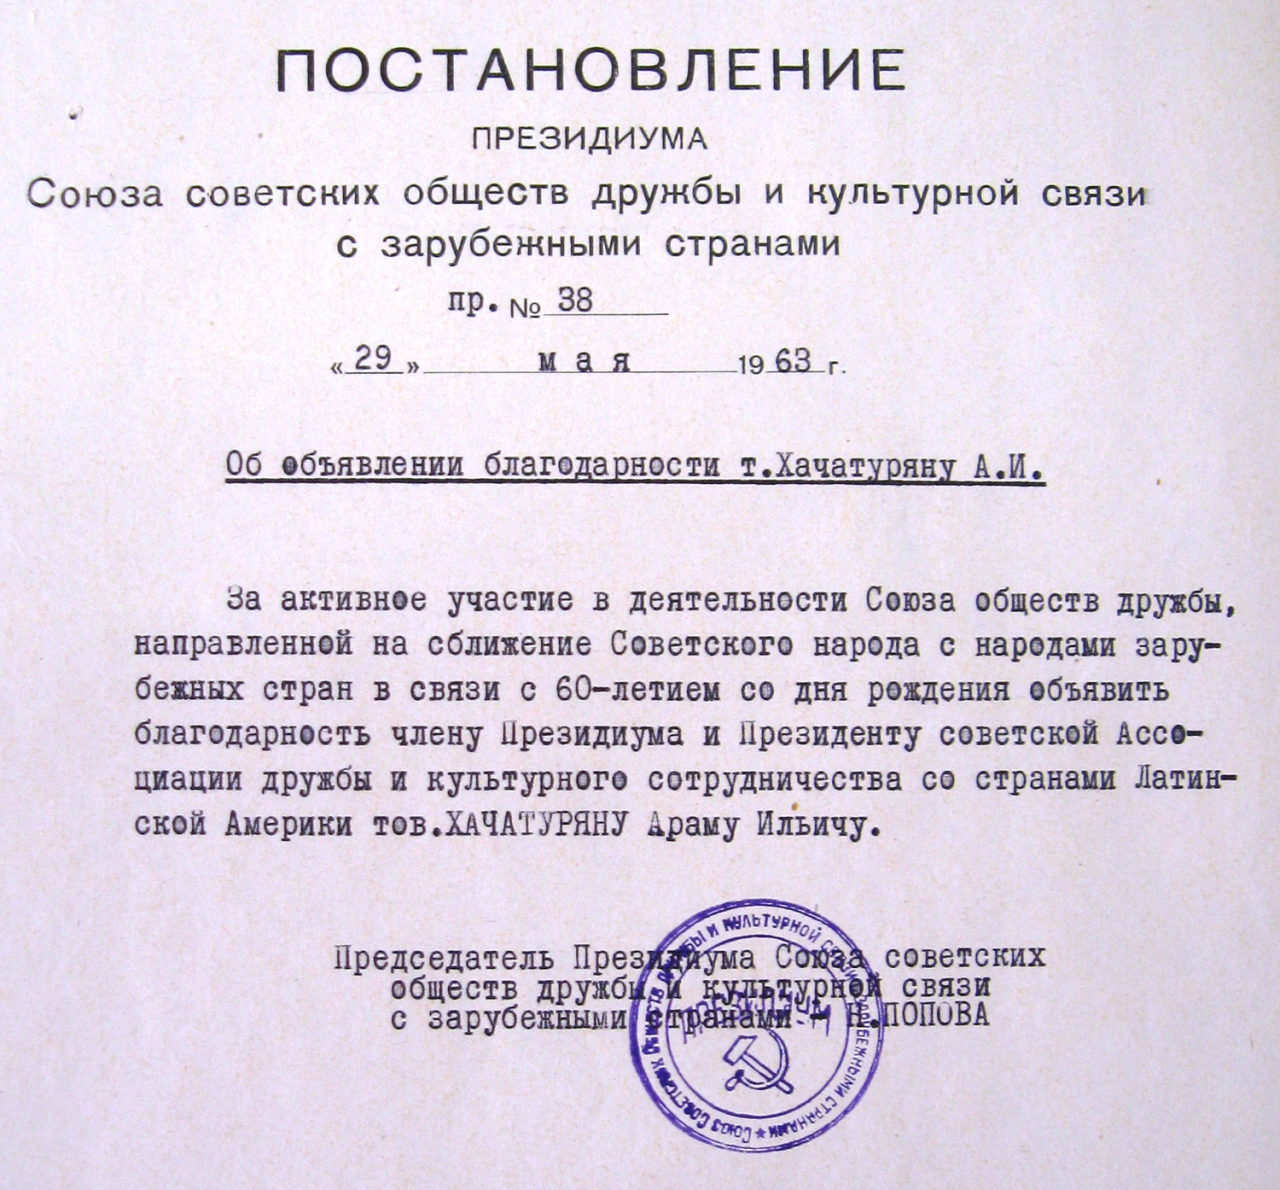 Որոշում ՝ արտասահմանյան երկրների հետ մշակութային կապի և բարեկամության սովետական ընկերությունների միության նախագահության՝ հանձնված Ա.Խաչատրյանին: 